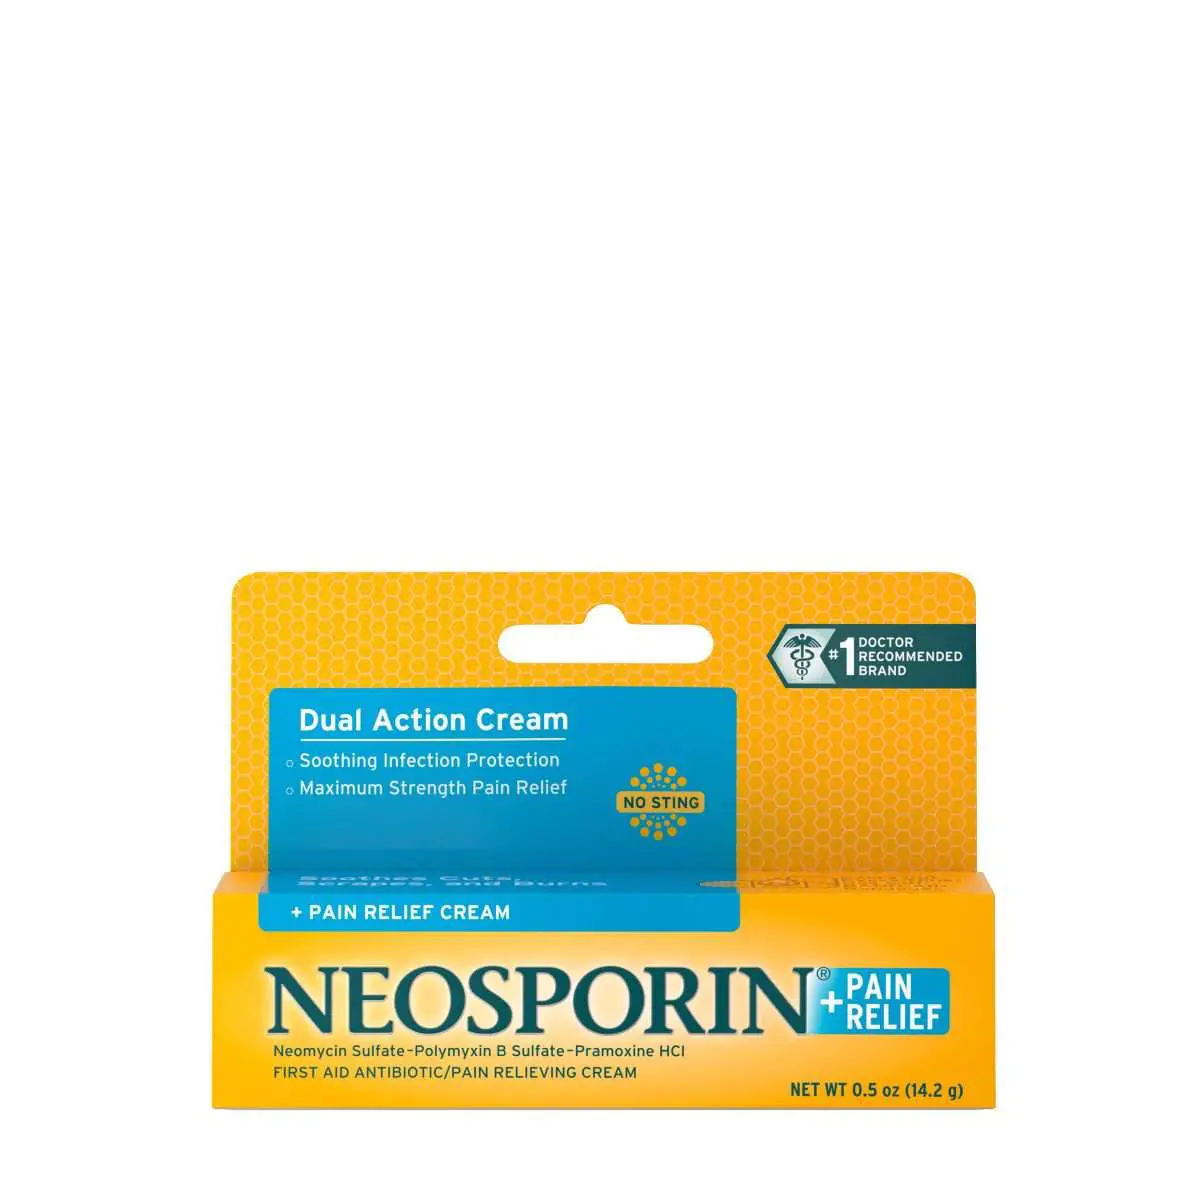 Neosporin + Pain Relief Dual Action First Aid Antibiotic Cream,.5 oz ...